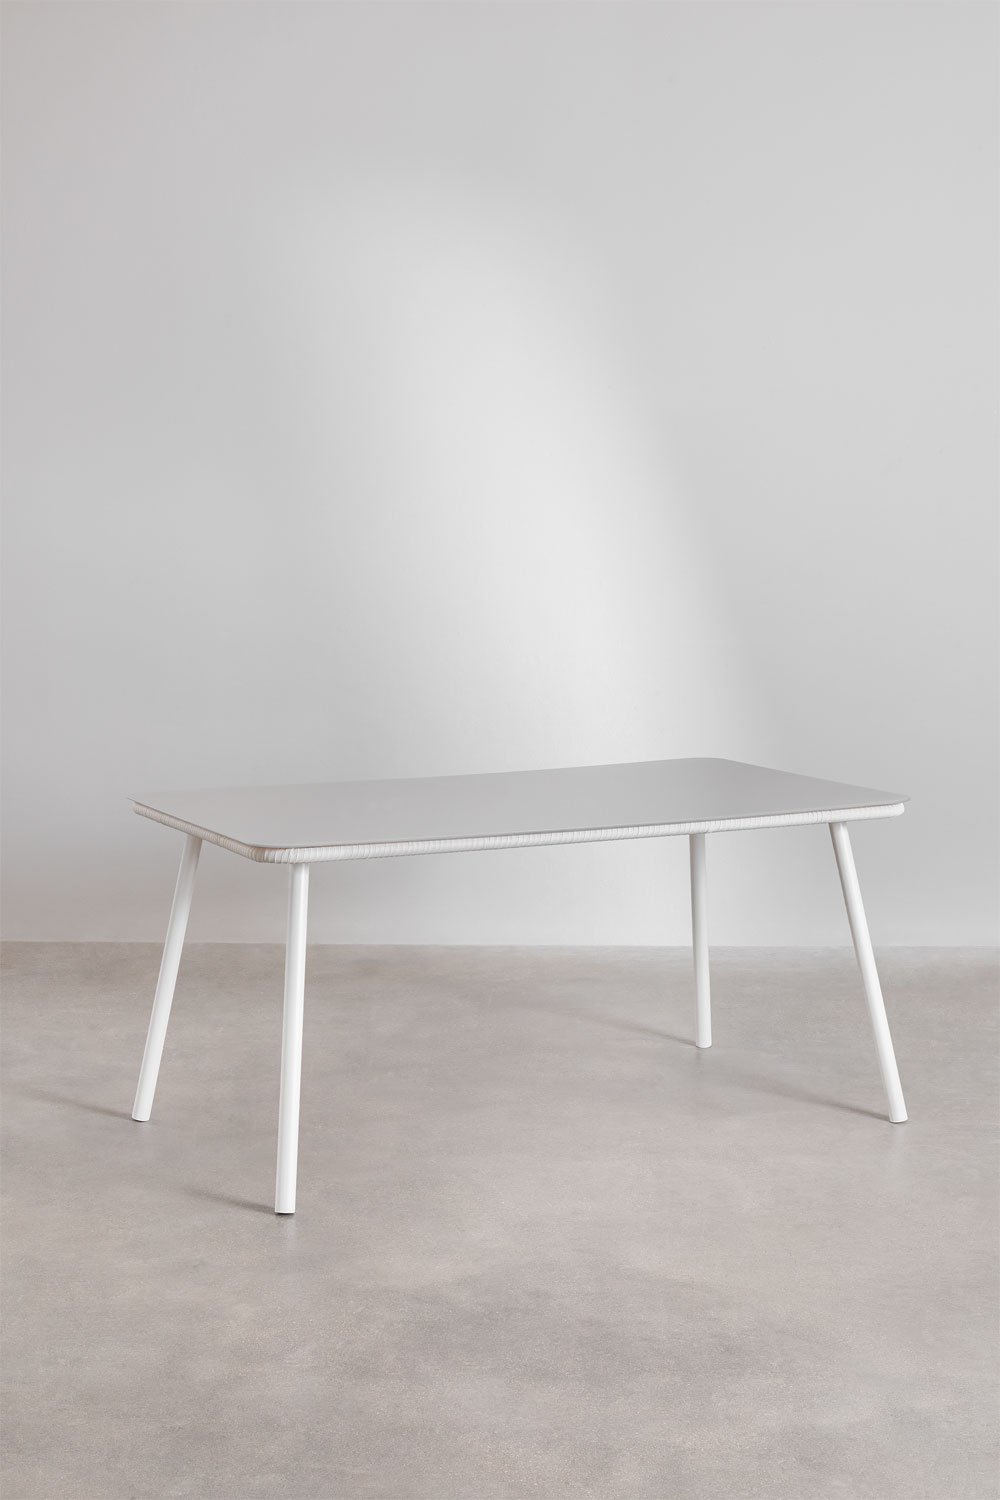 Prostokątny stół do jadalni ze szkła i aluminium (160x90 cm) Arhiza, obrazek w galerii 1